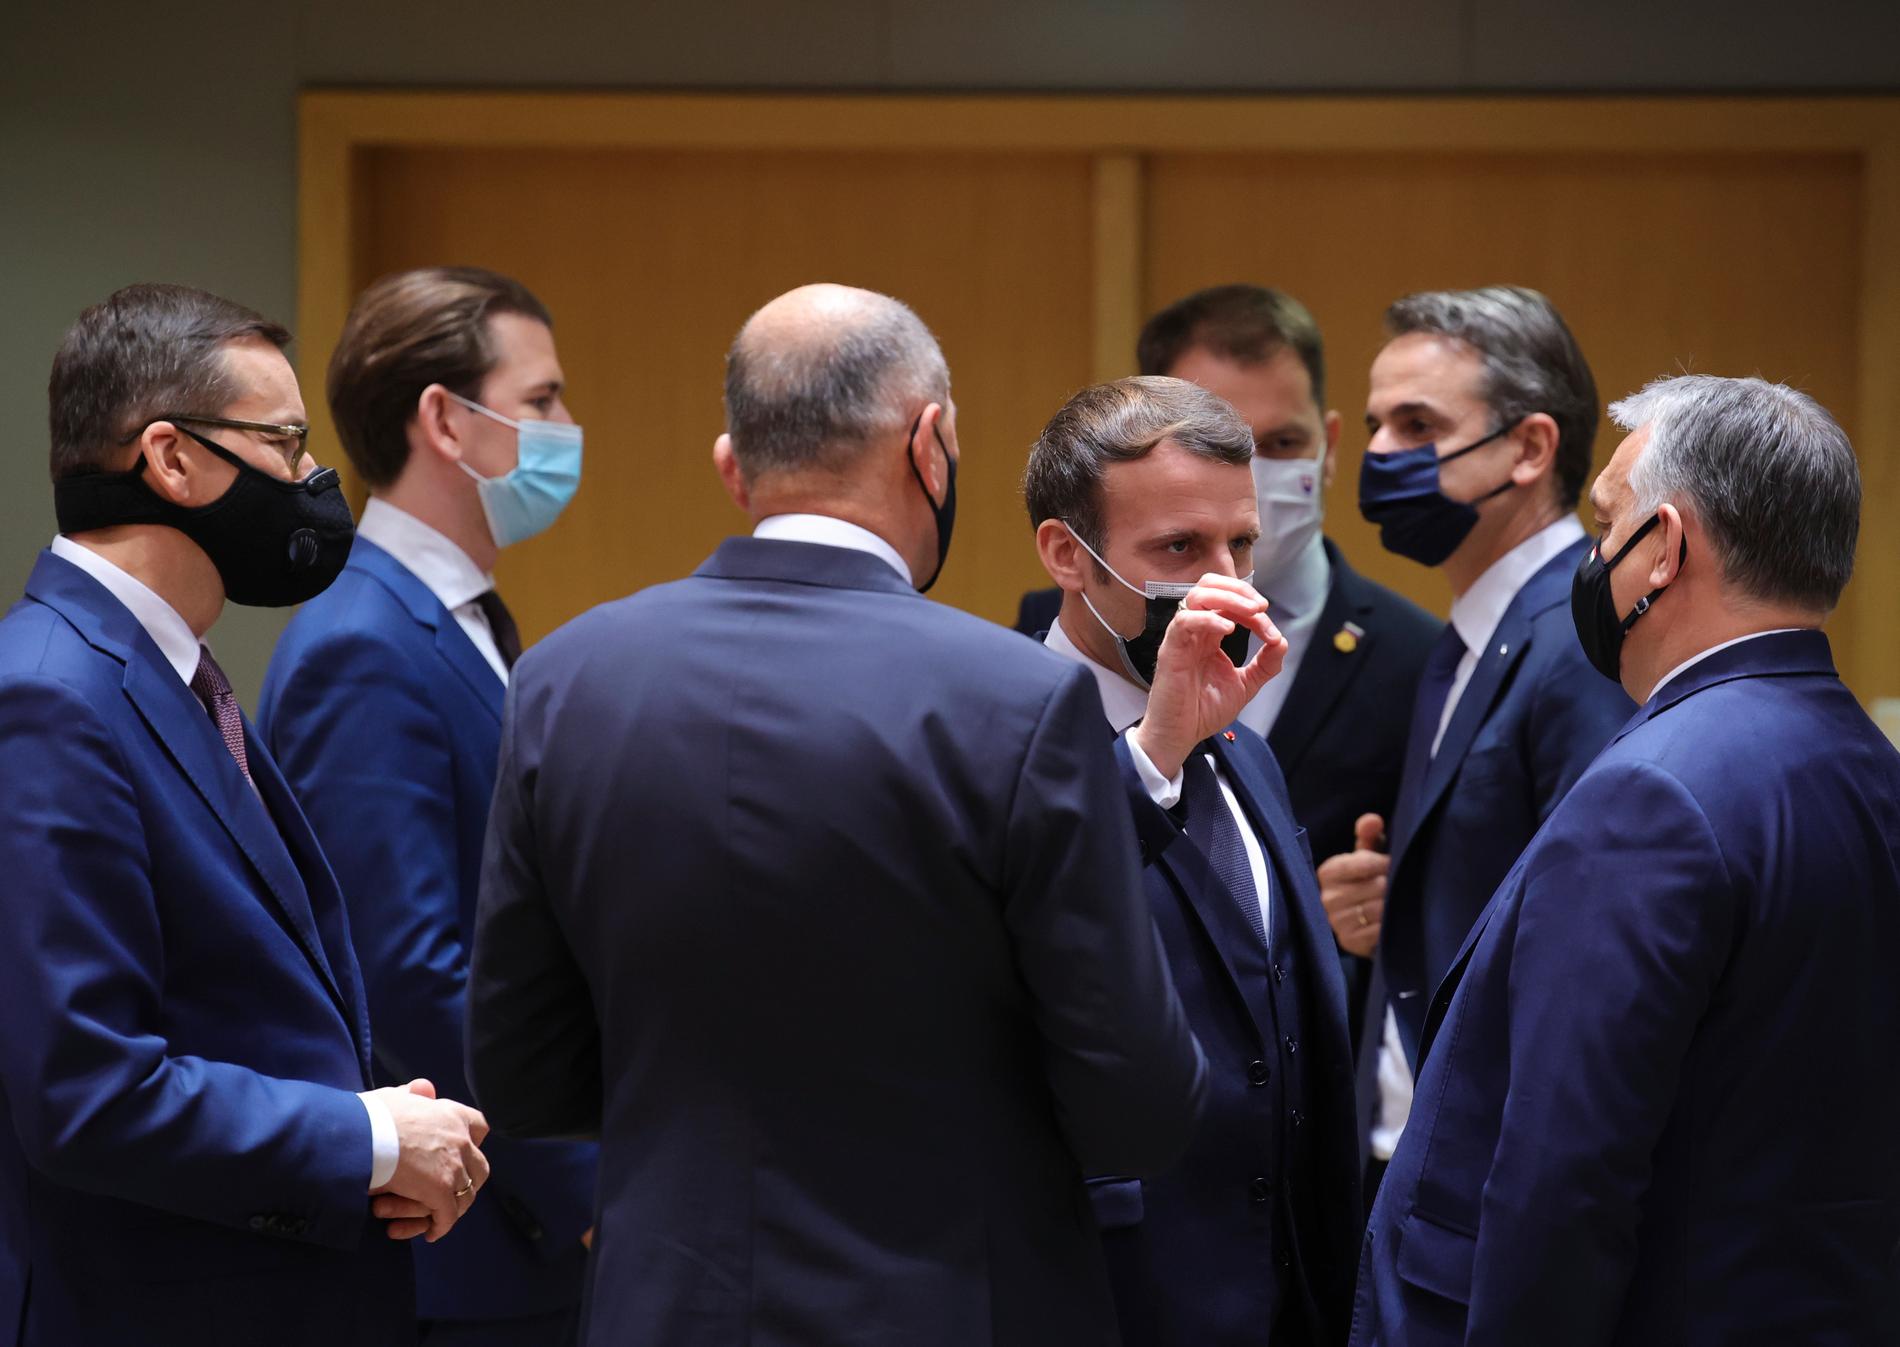 Macron i samspråk med Ungerns premiärminister Viktor Orbán. Omkring dem står bland andra Polens premiärminister Mateusz Morawiecki och Österrikes förbundskansler Sebastian Kurz.